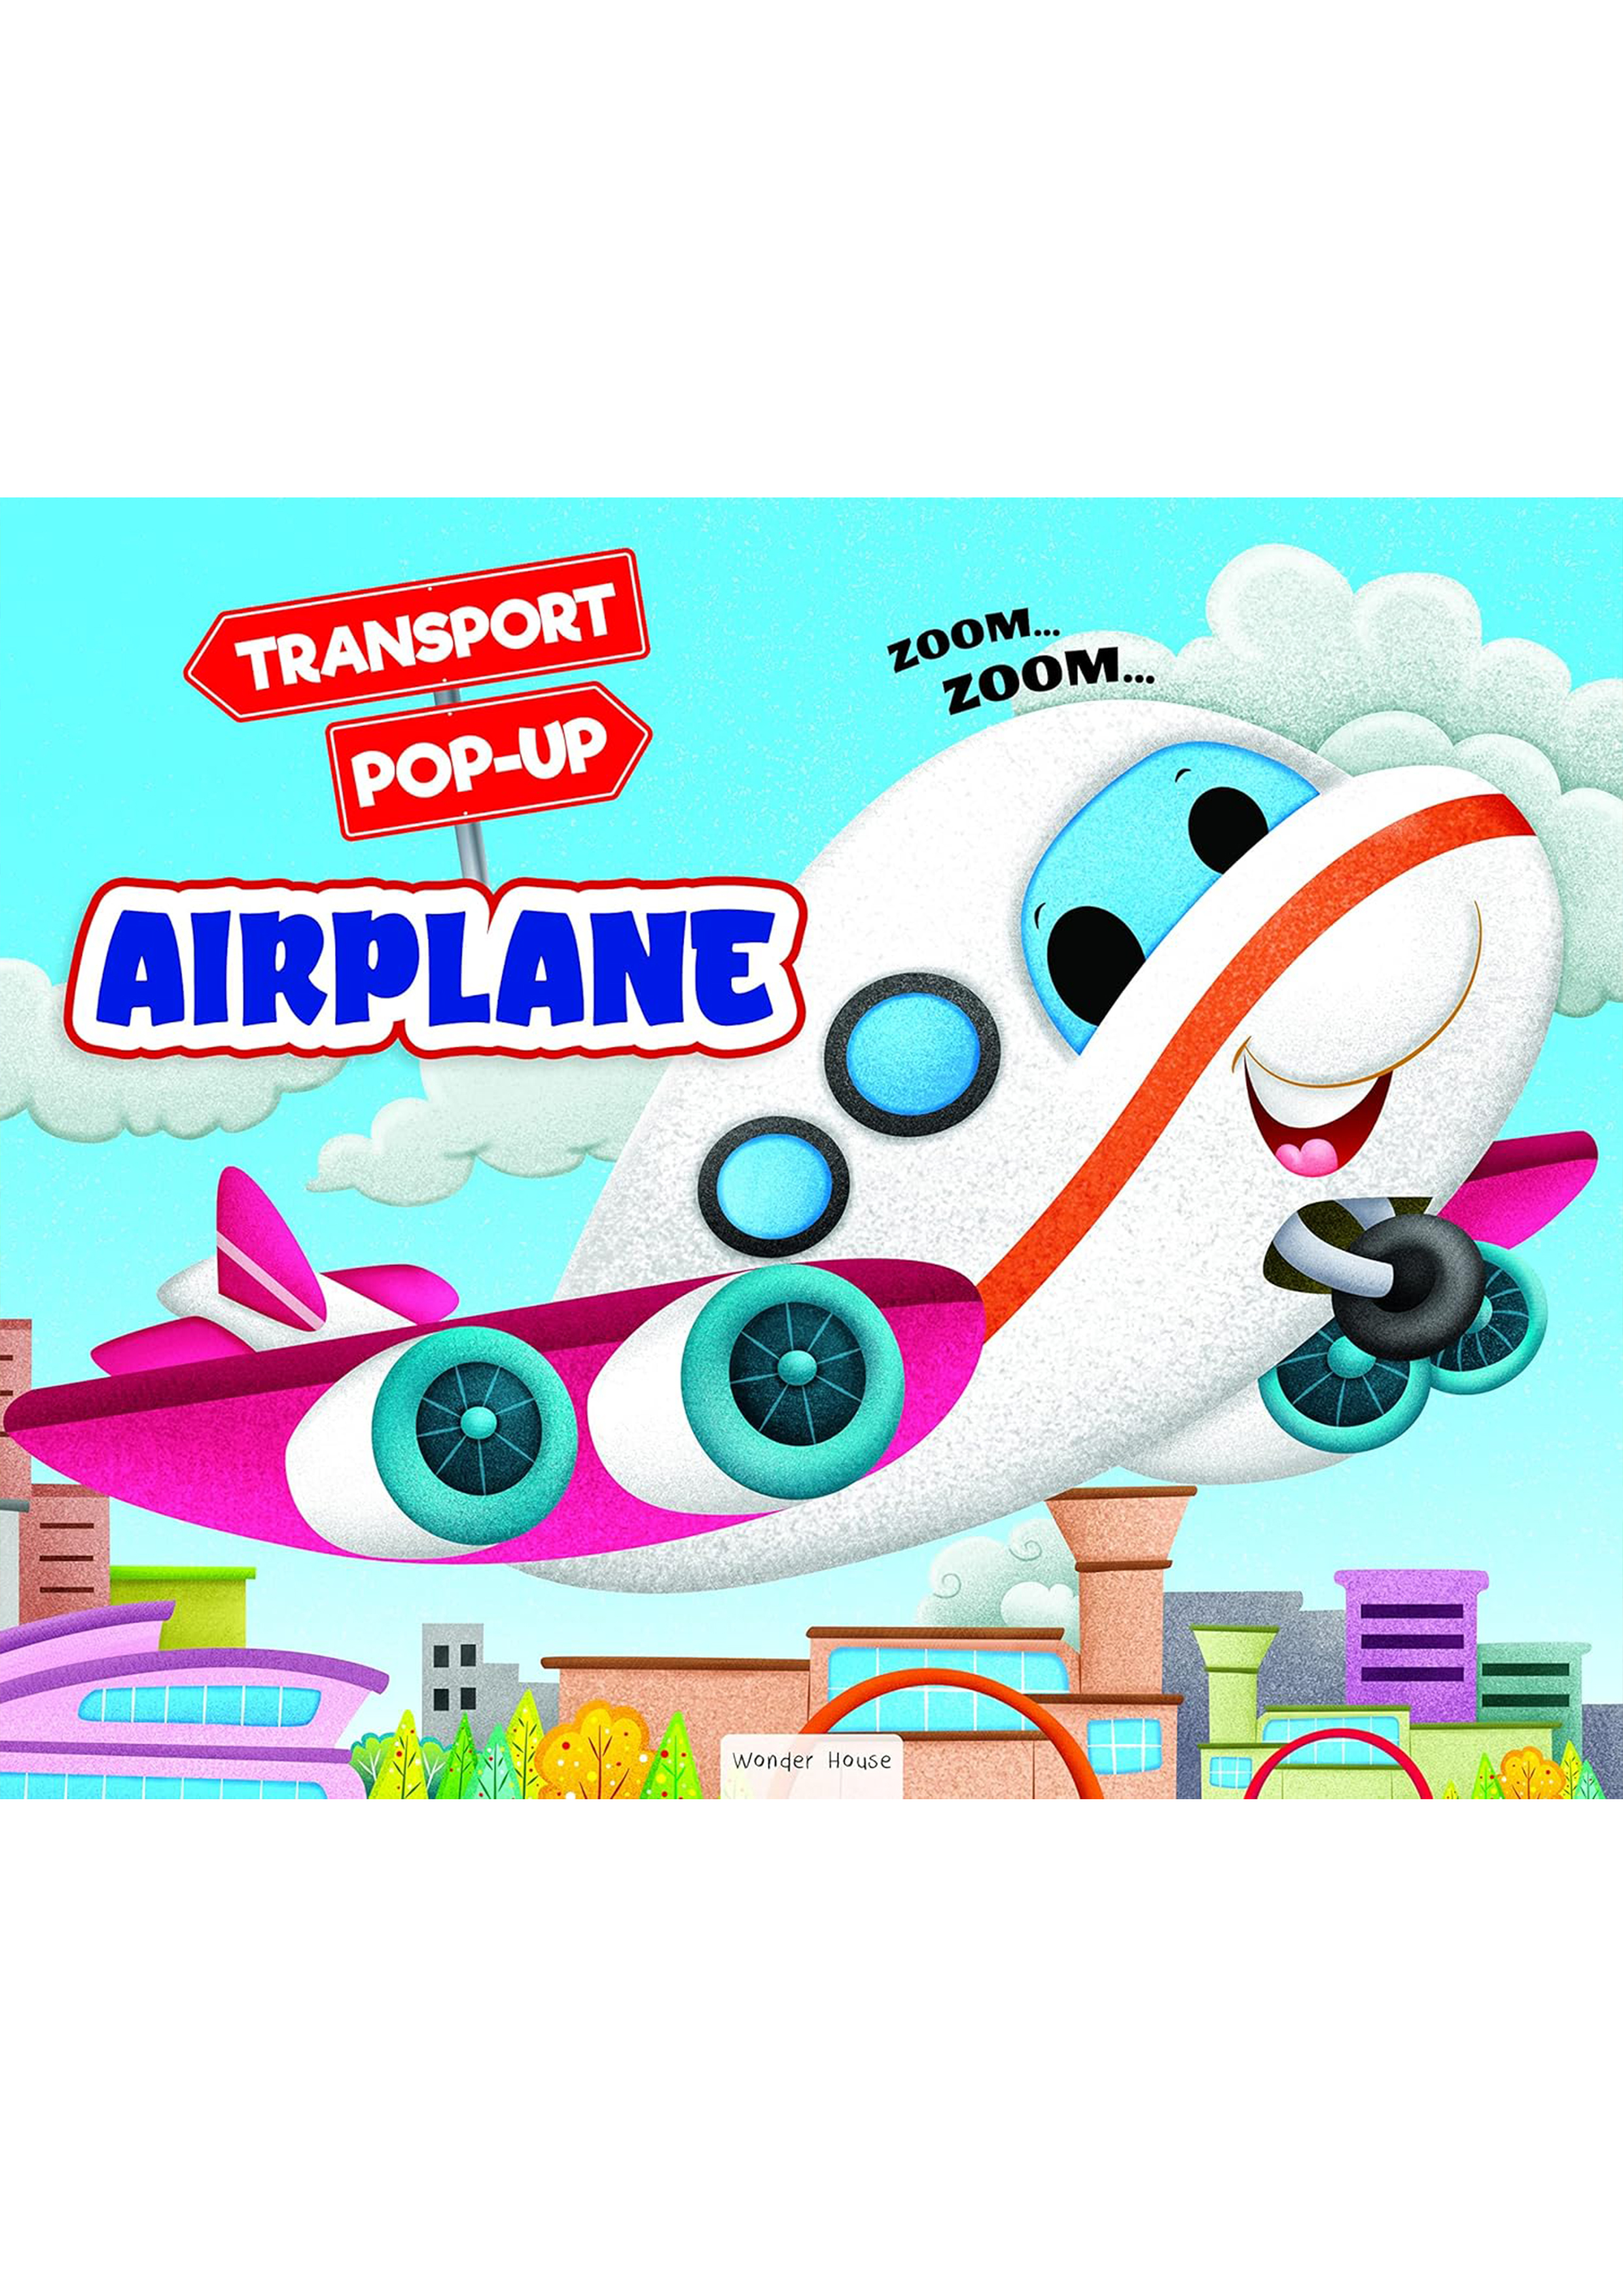 Pop-up Transport - Airplane (হার্ডকভার)